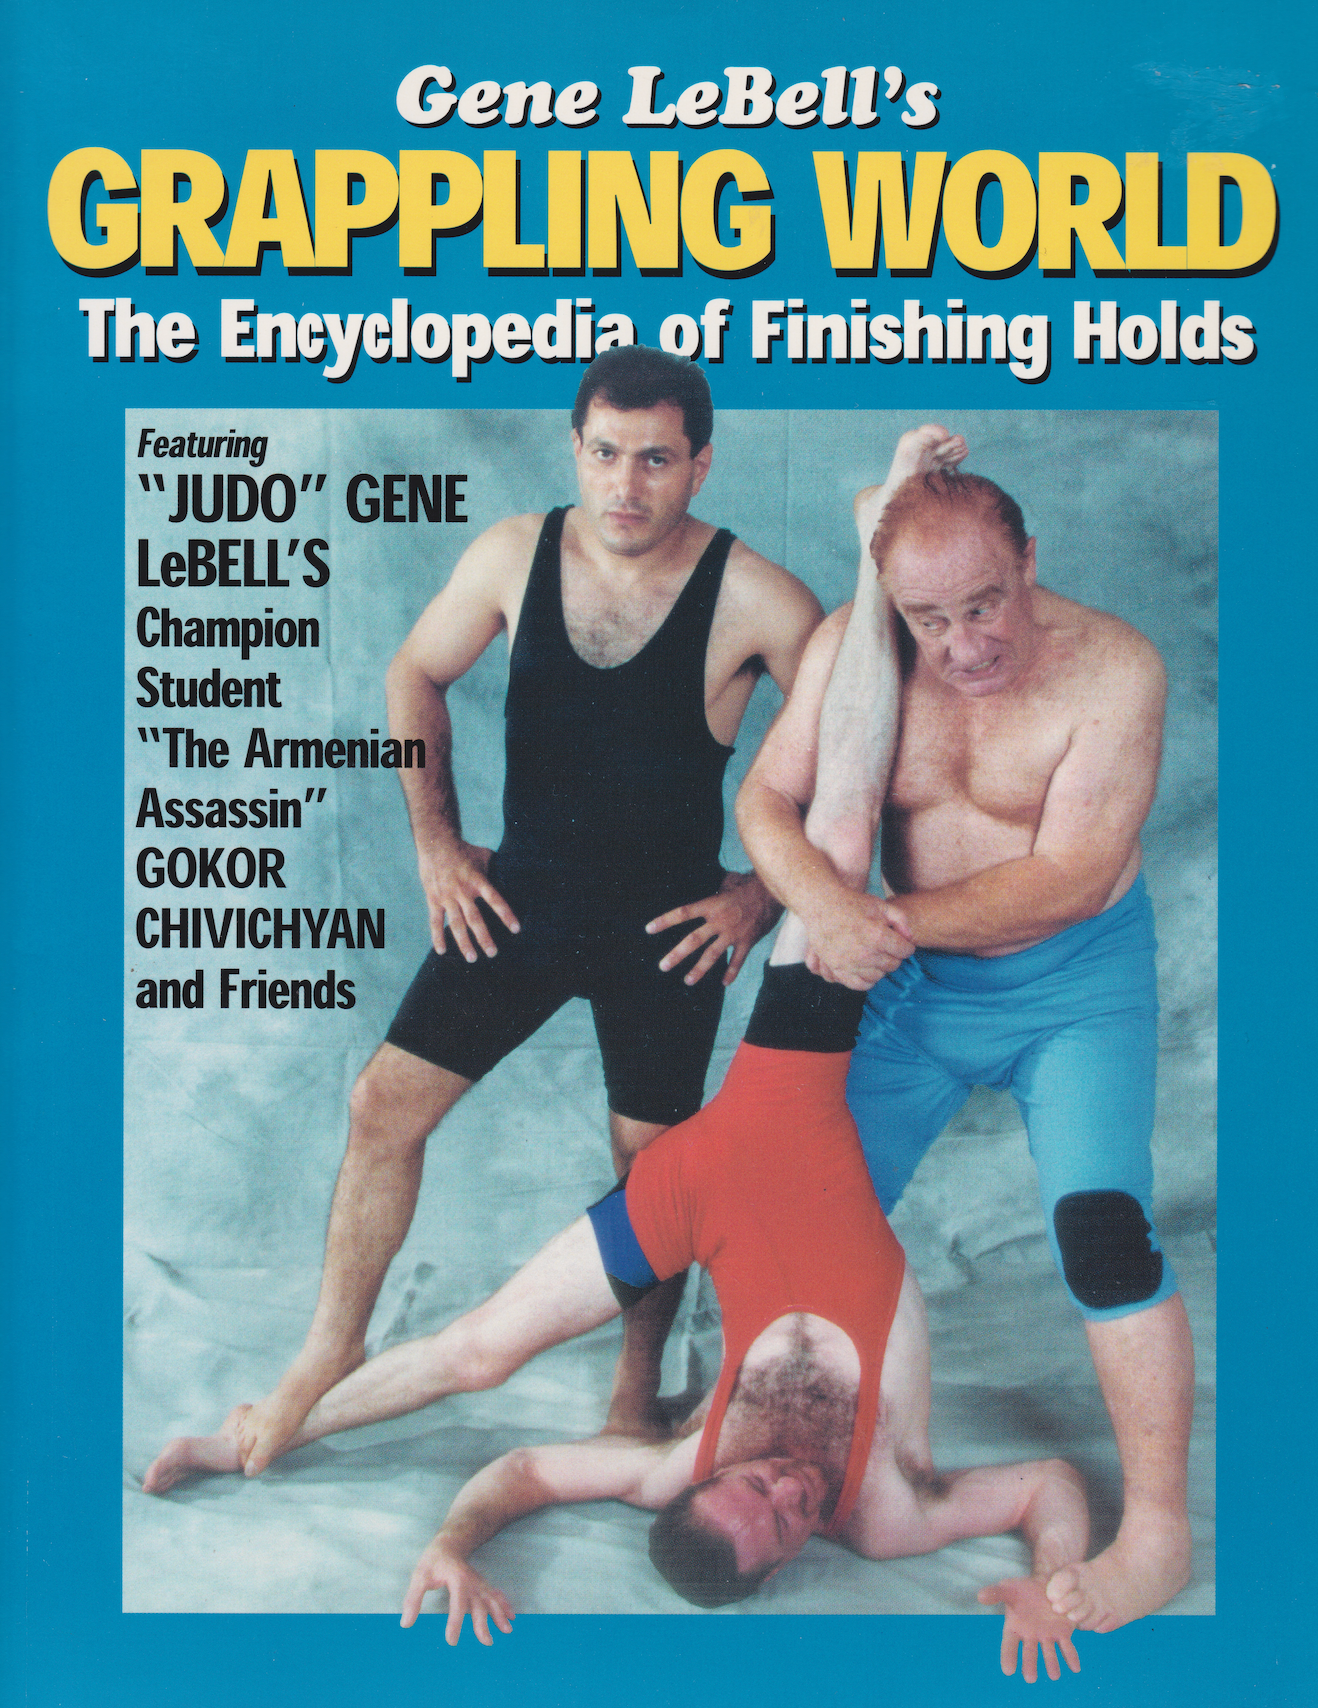 Gene LeBell's Grappling World - フィニッシング ホールド ブック (第 1 版) (中古) 